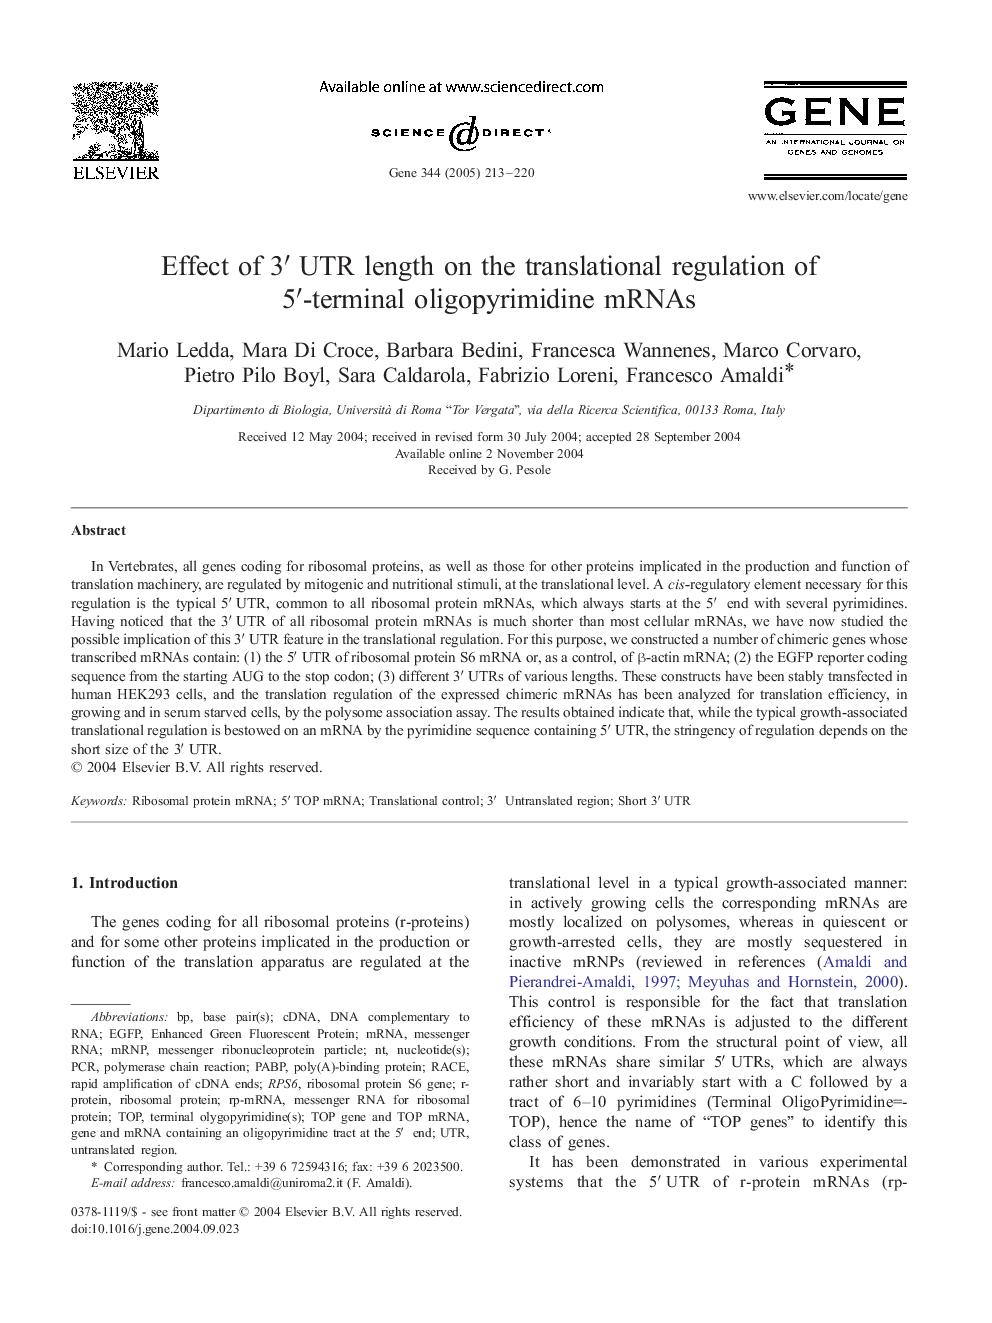 Effect of 3â²UTR length on the translational regulation of 5â²-terminal oligopyrimidine mRNAs